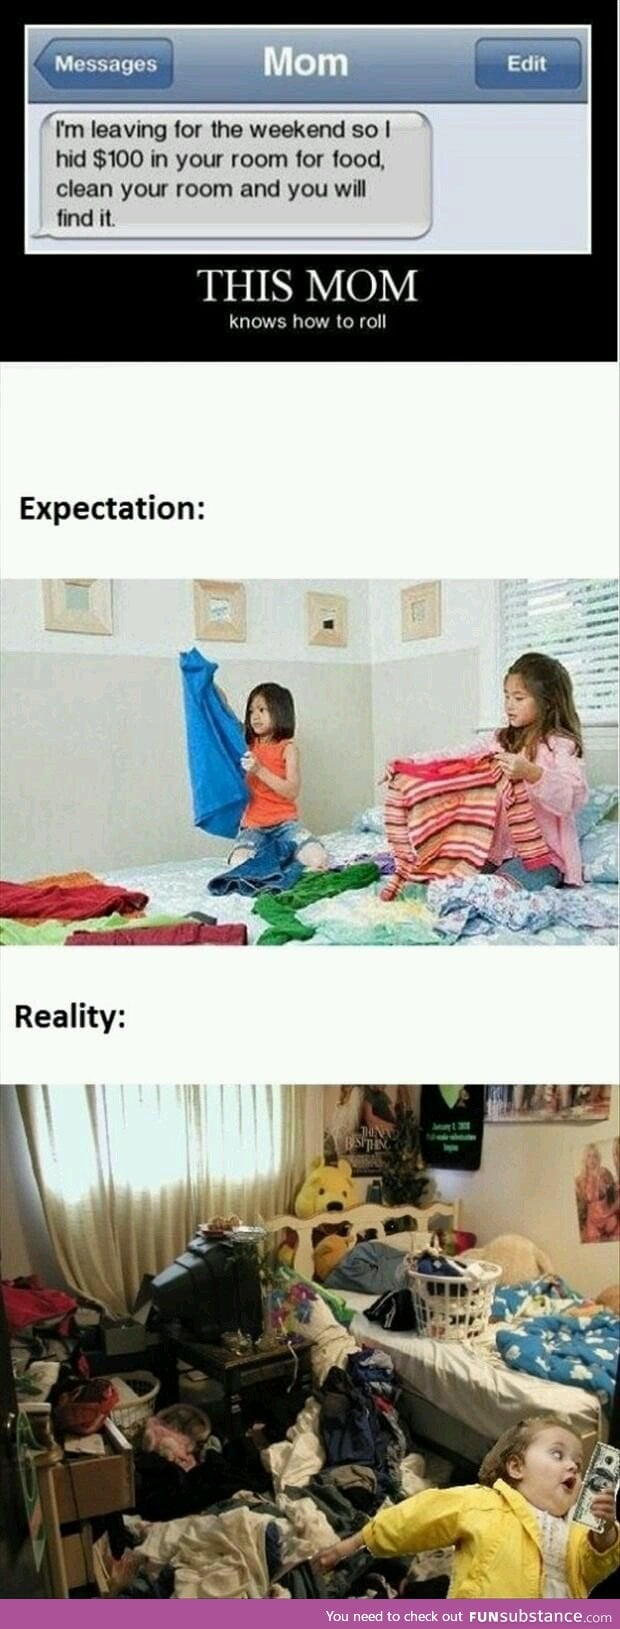 Expectations v/s reality